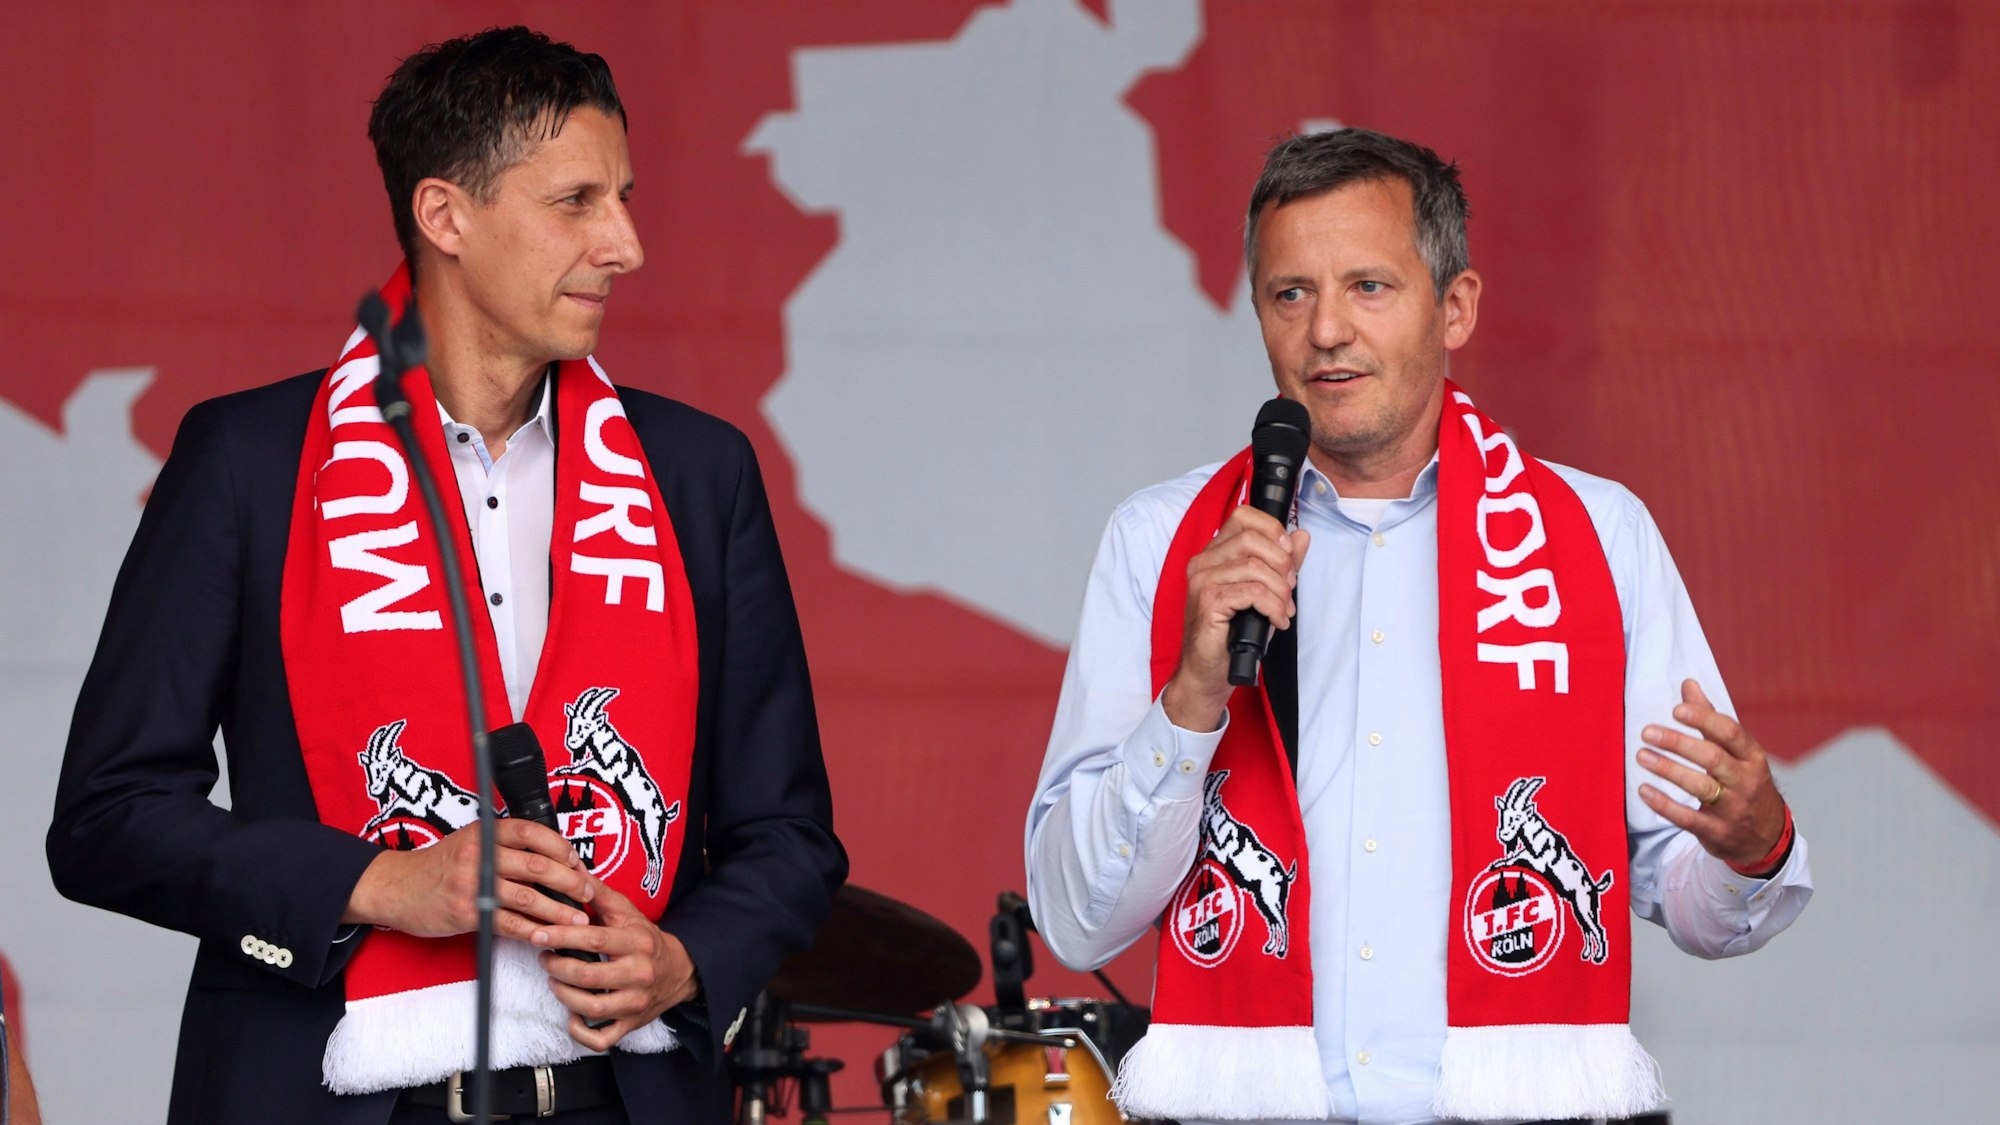 Die Geschäftsführer des 1. FC Köln, Christian Keller (l.) und Philipp Türoff, bei der Saisoneröffnung auf den Stadionvorwiesen am 23. Juli 2022